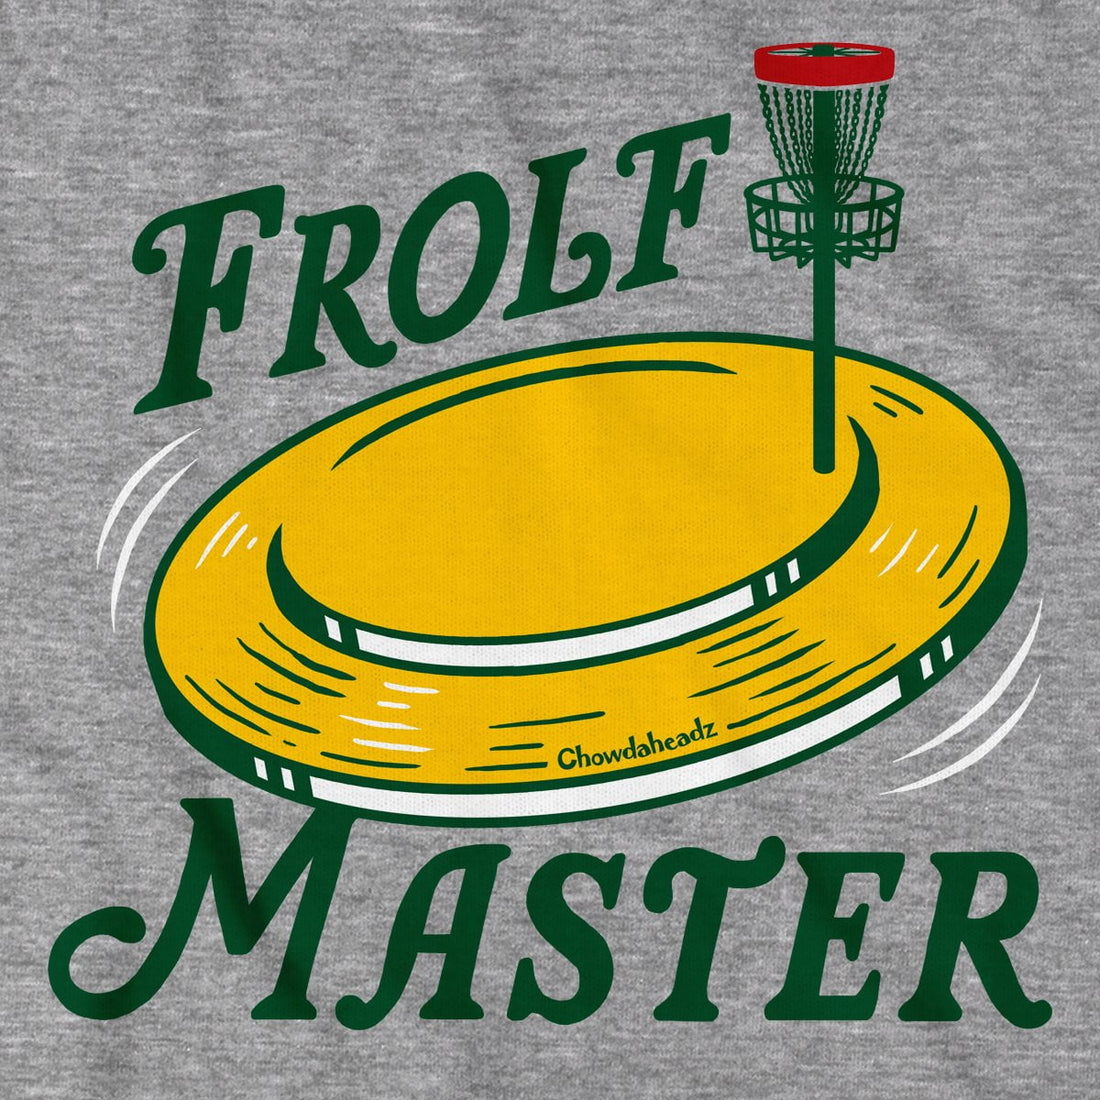 Frolf Master T-Shirt - Chowdaheadz